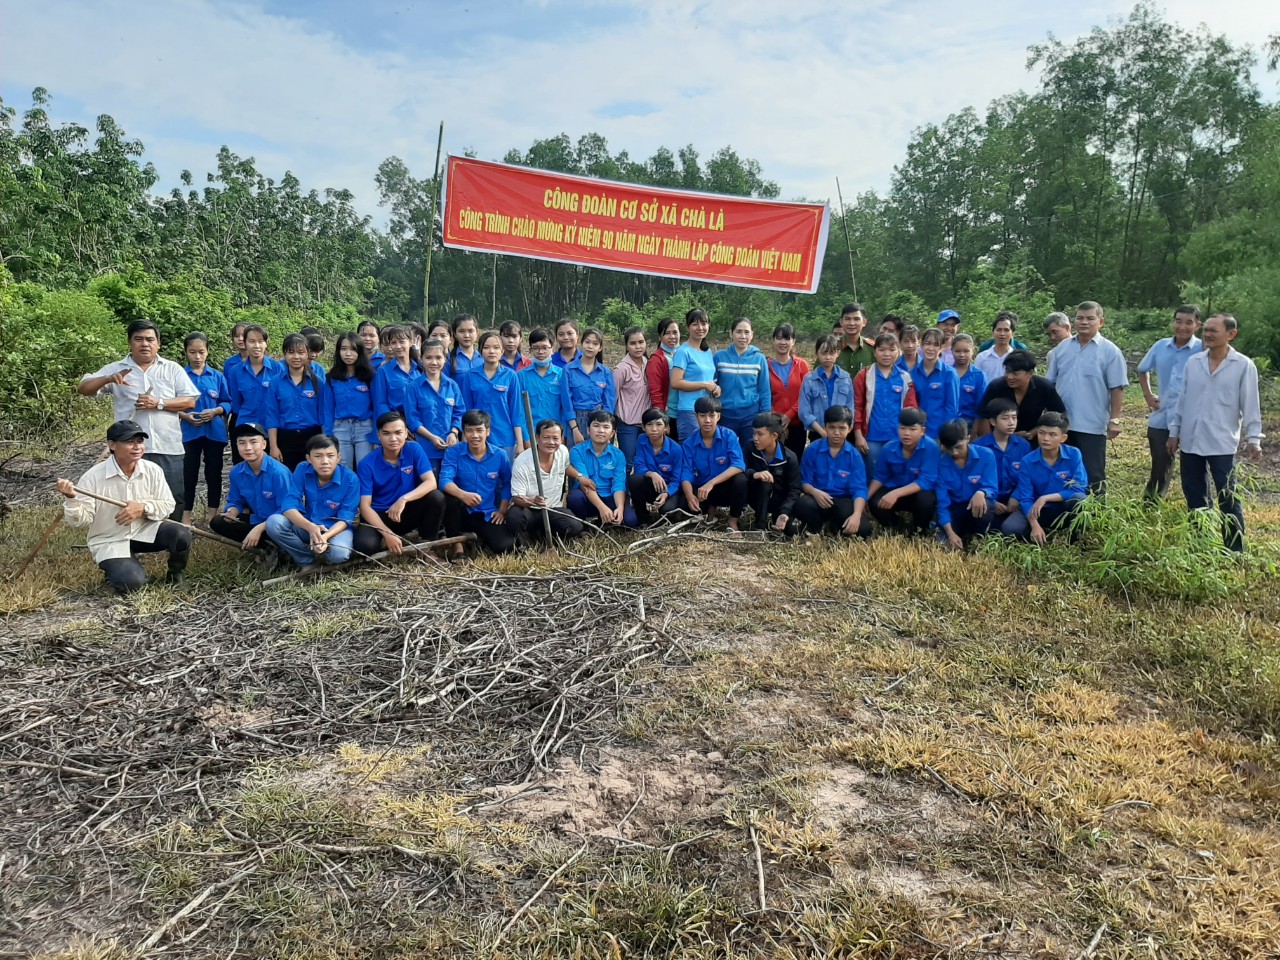 CĐCS xã Chà Là, tổ chức các hoạt động hưởng ứng chào mừng kỷ niệm 90 năm ngày thành lập Công đoàn Việt Nam năm 2019